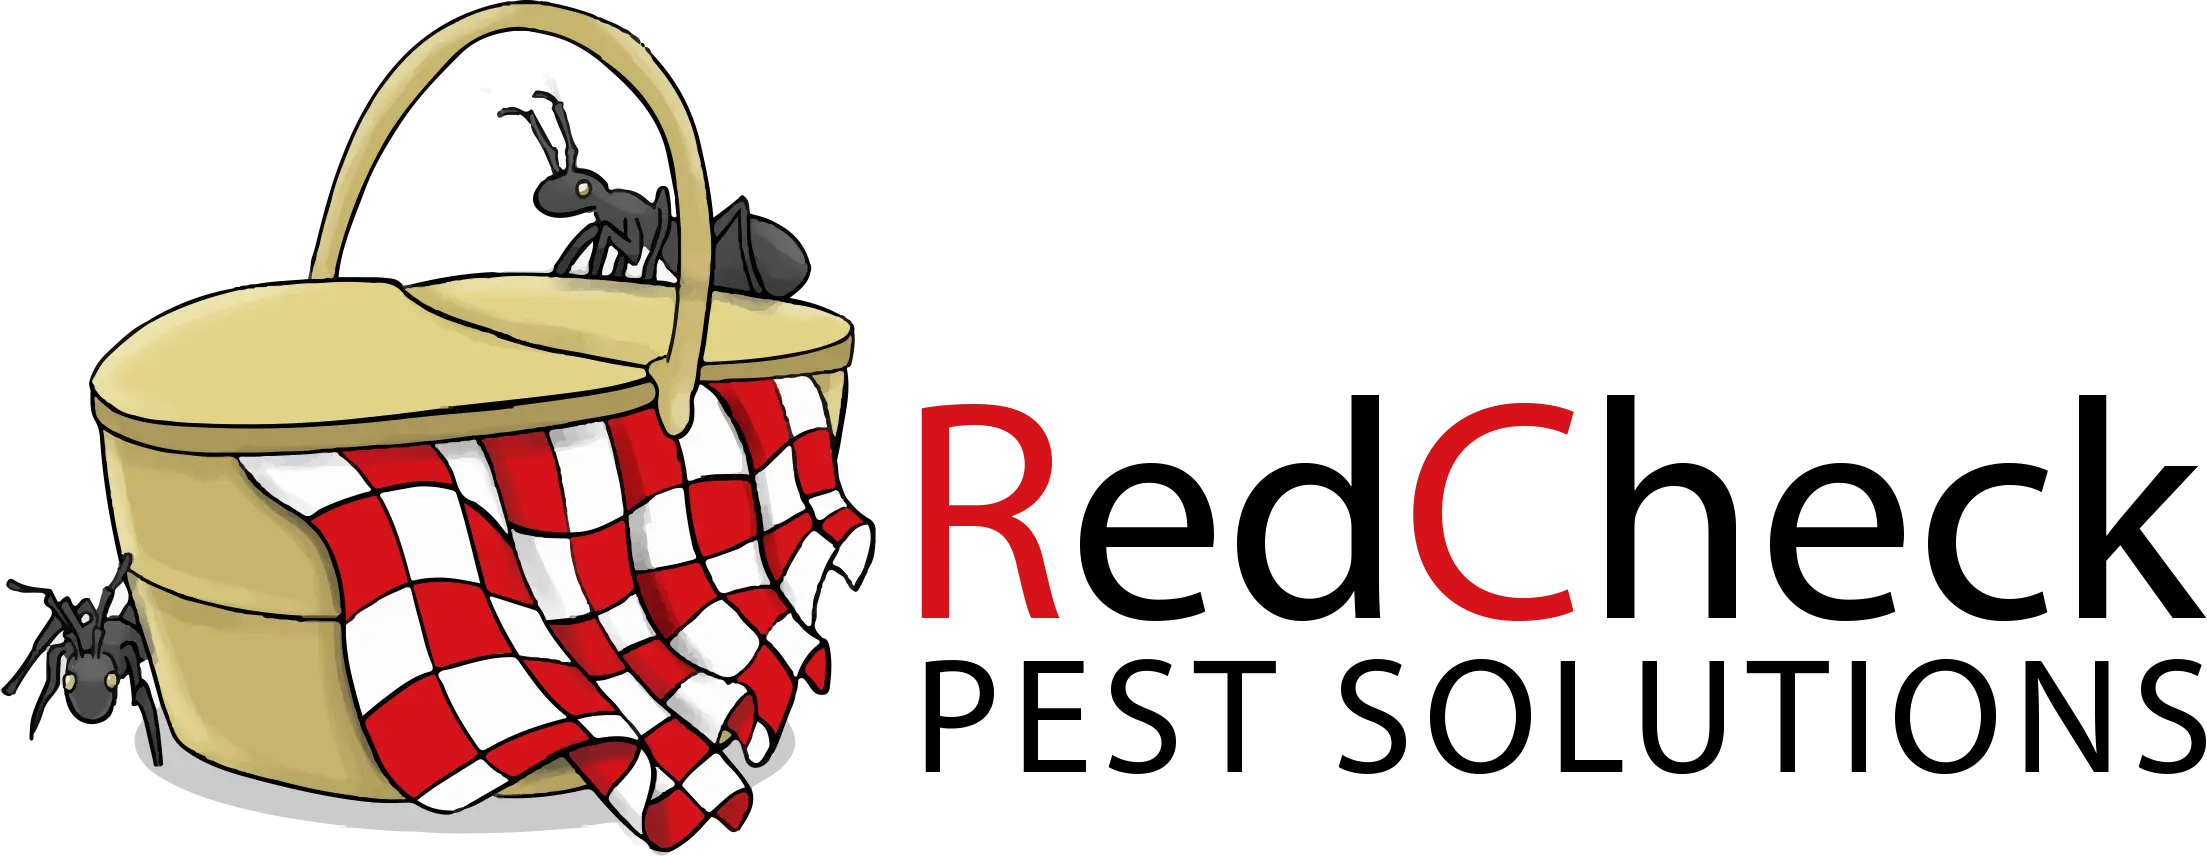 red-check-pest-control-logo